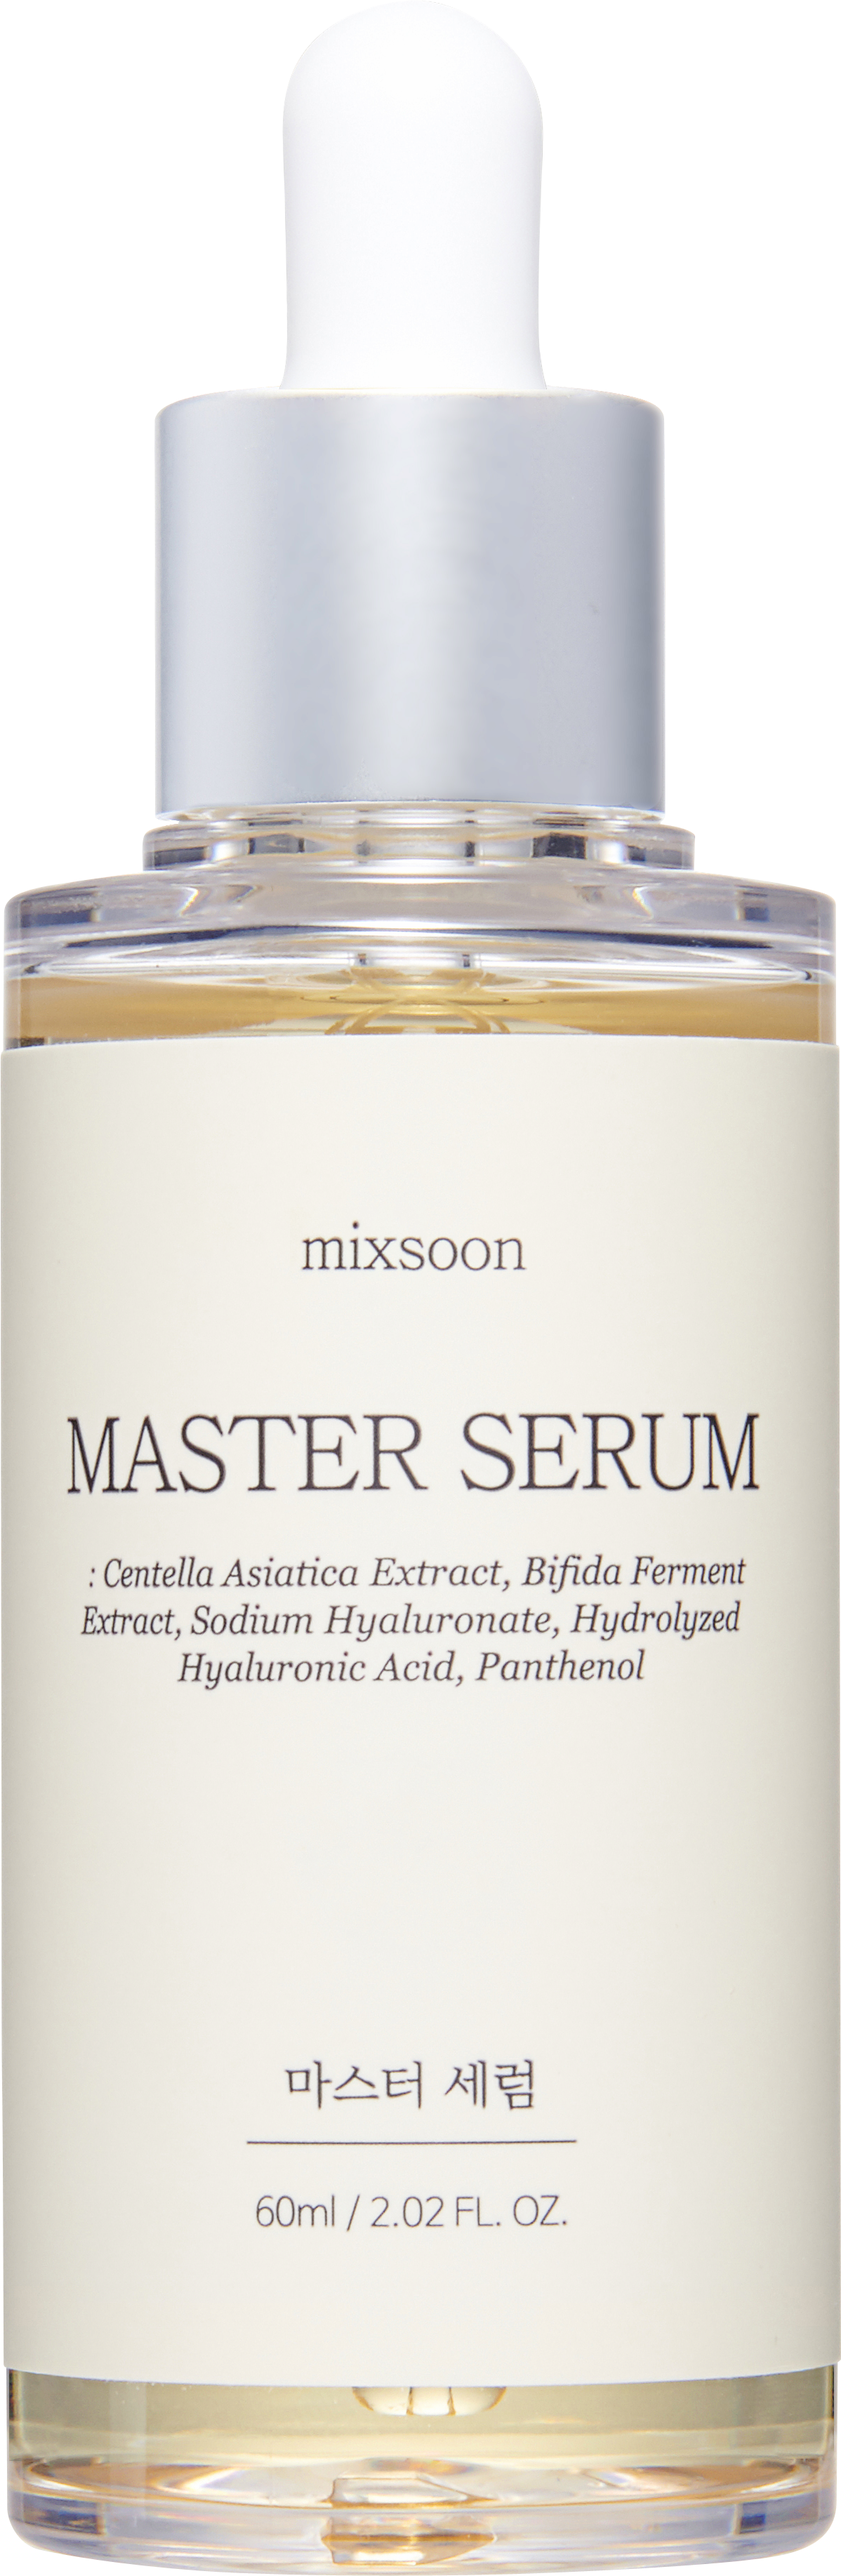 _Mixsoon_ Master Serum